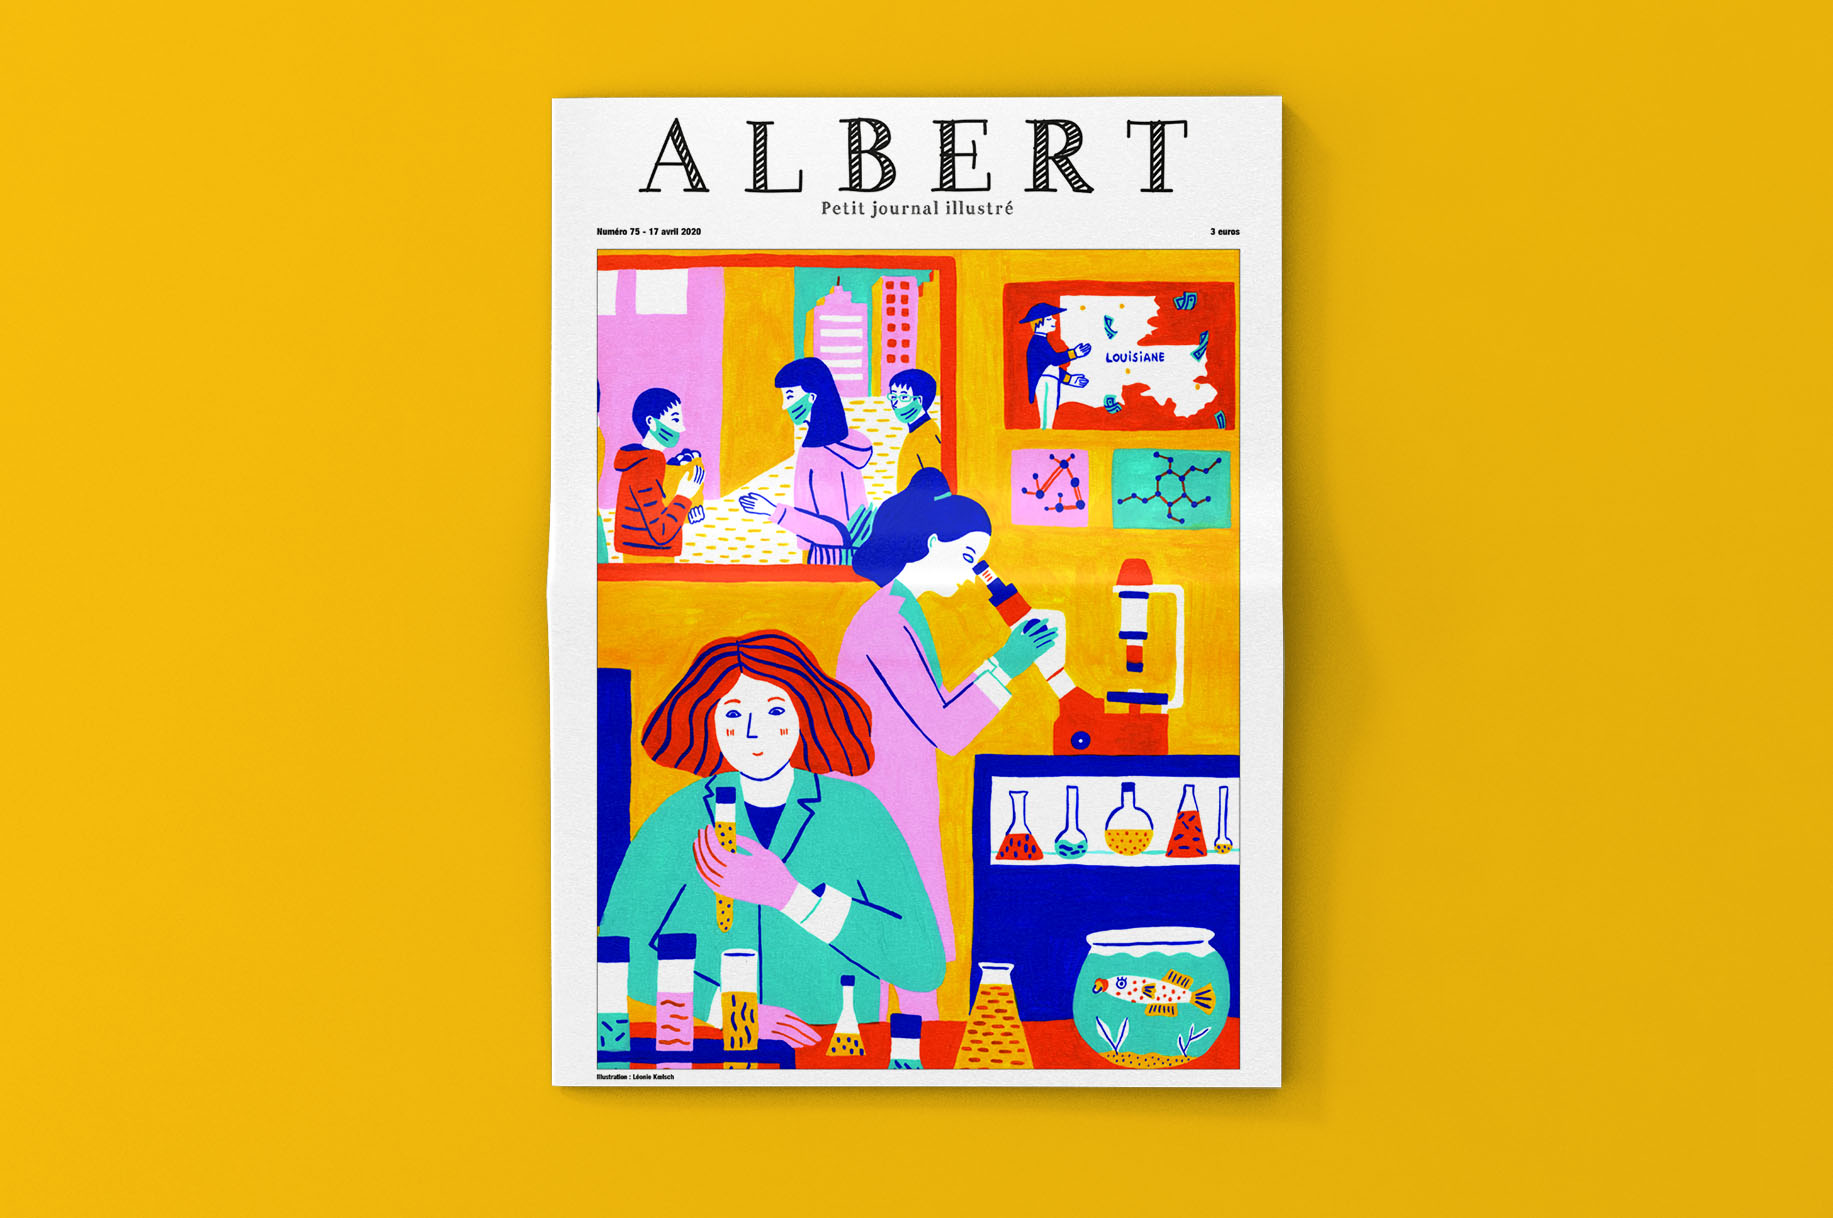 Illustration pour le journal Albert : couverture